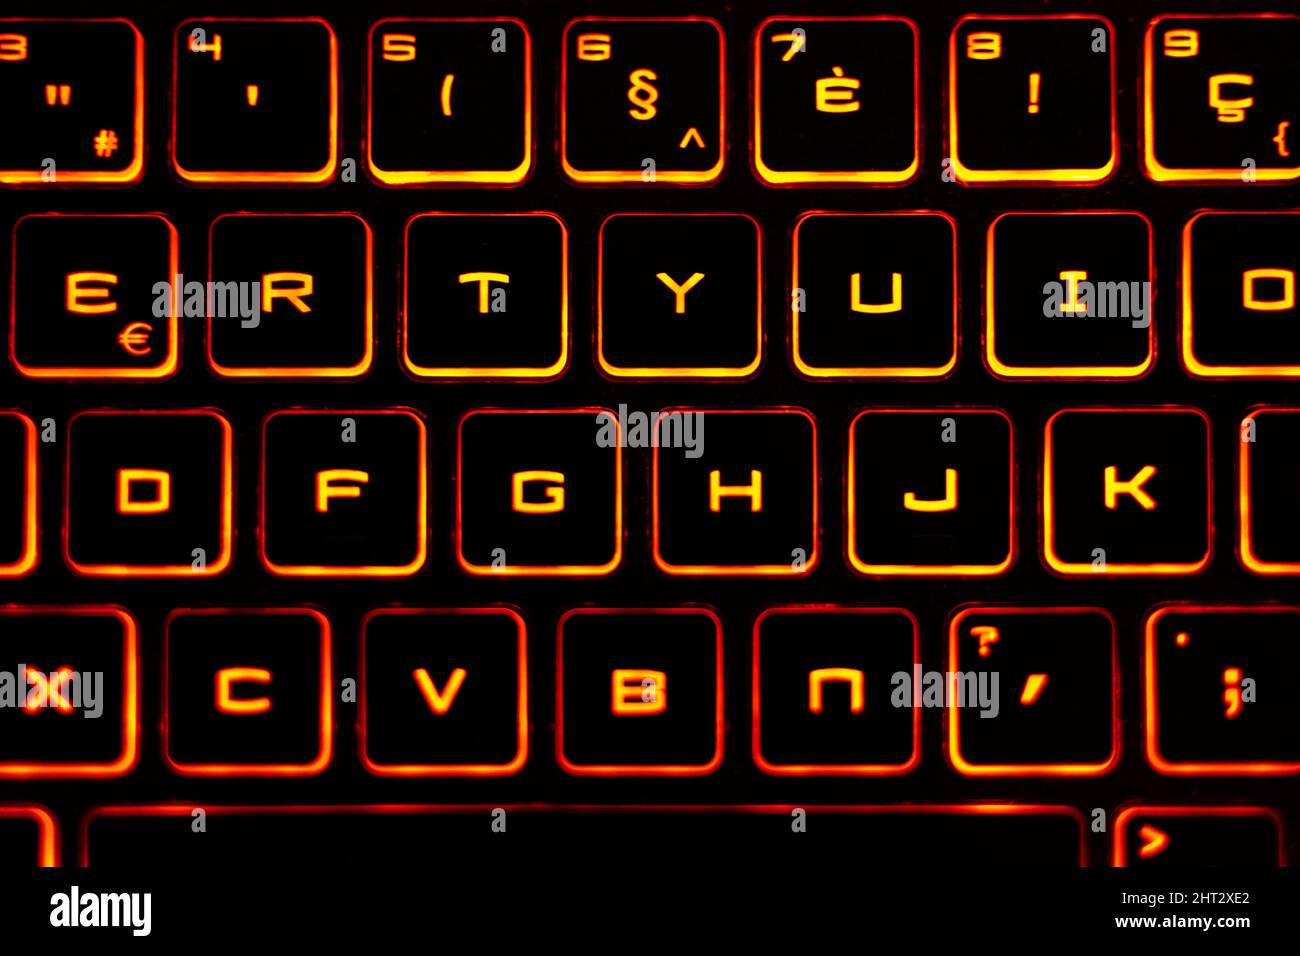 Primo piano della tastiera con luci arancioni Foto Stock